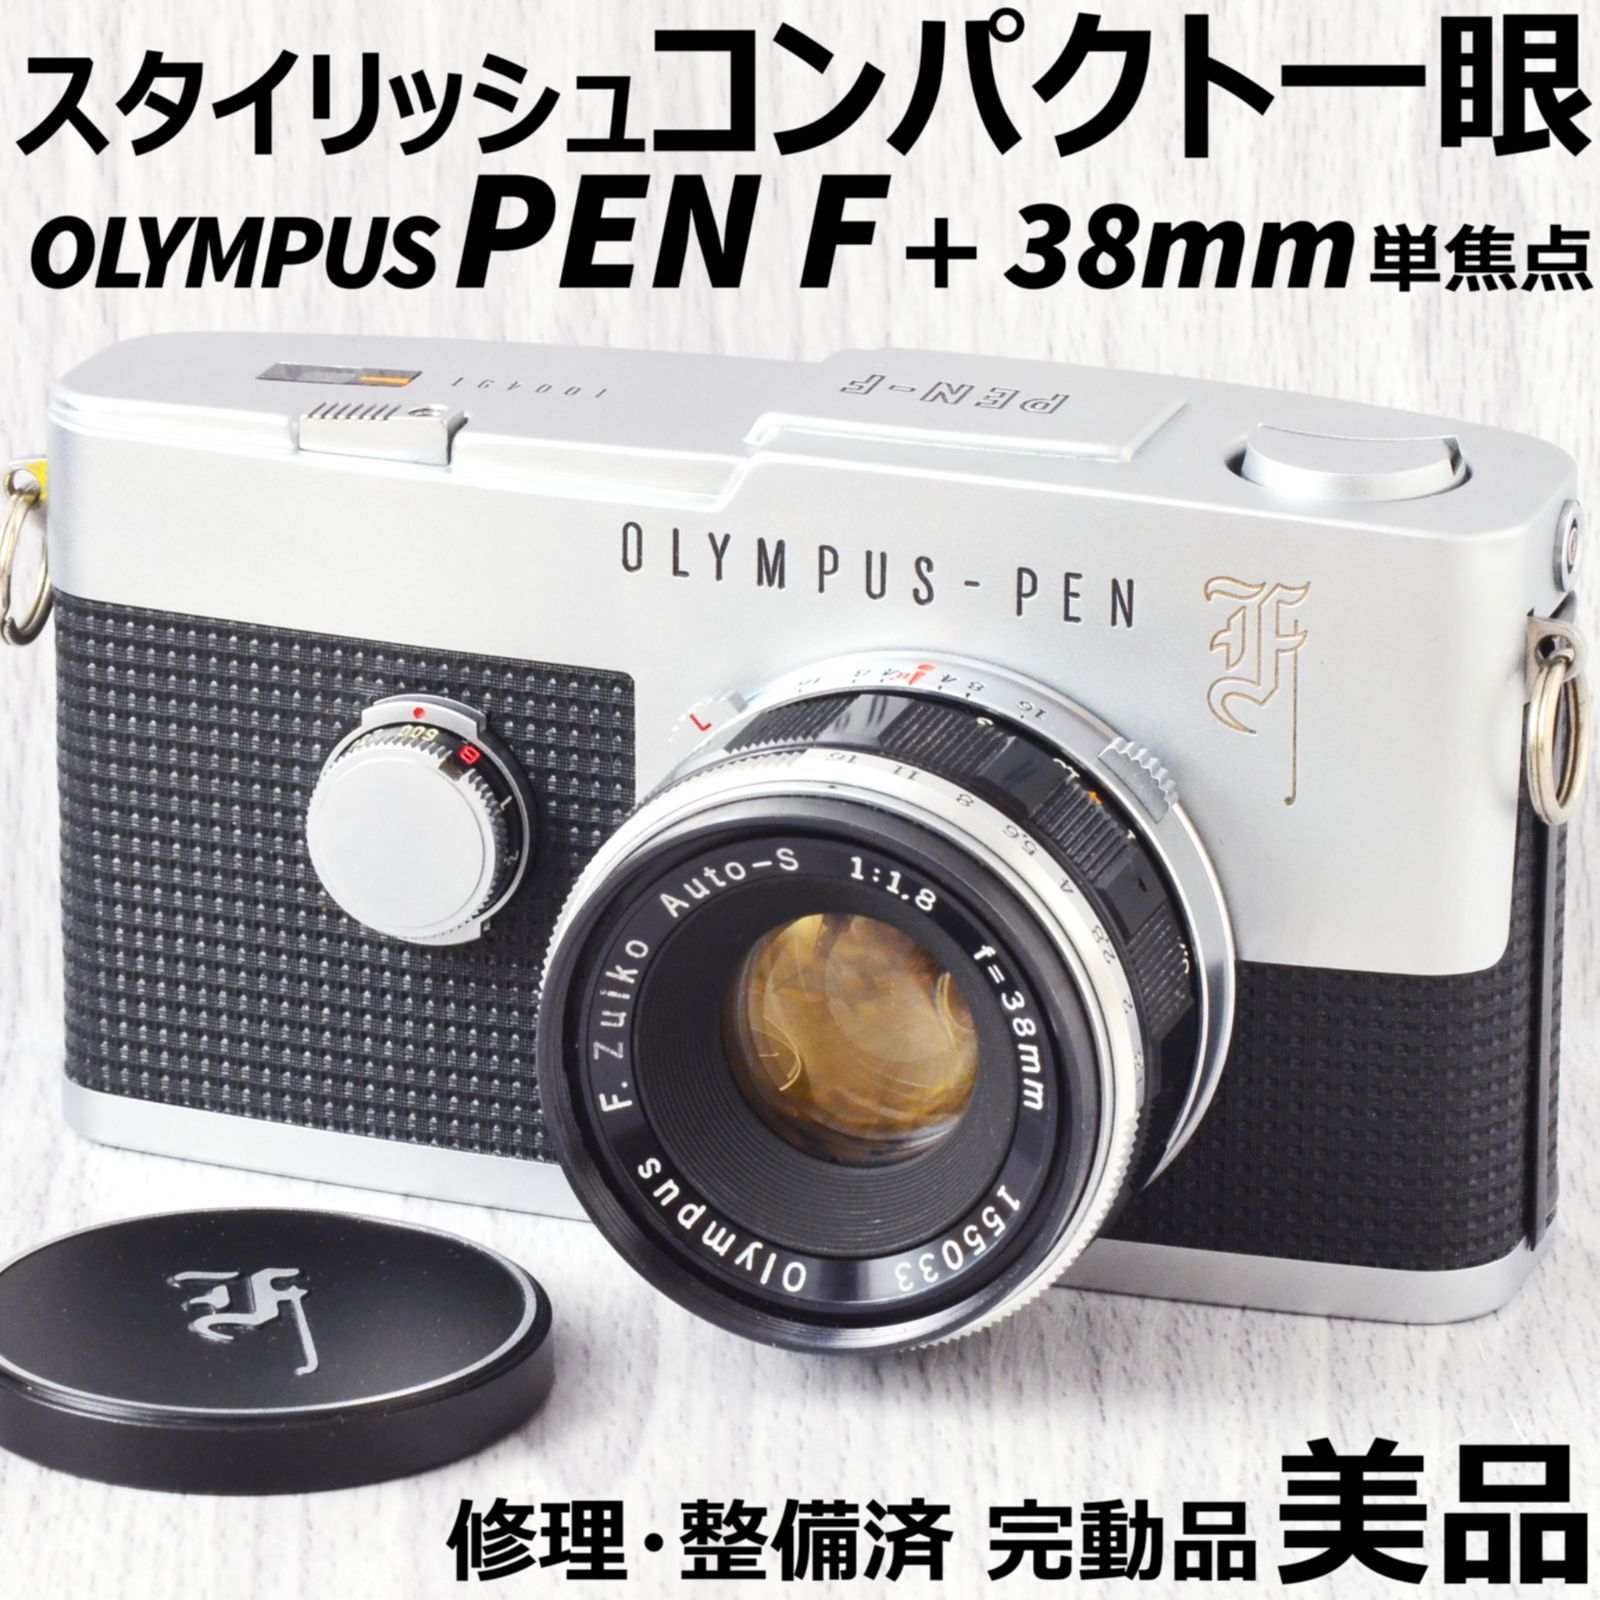 【完動品】OLYMPUS pen F ハーフ フィルムカメラ 整備済 動作確認済ハルノヒカメラ